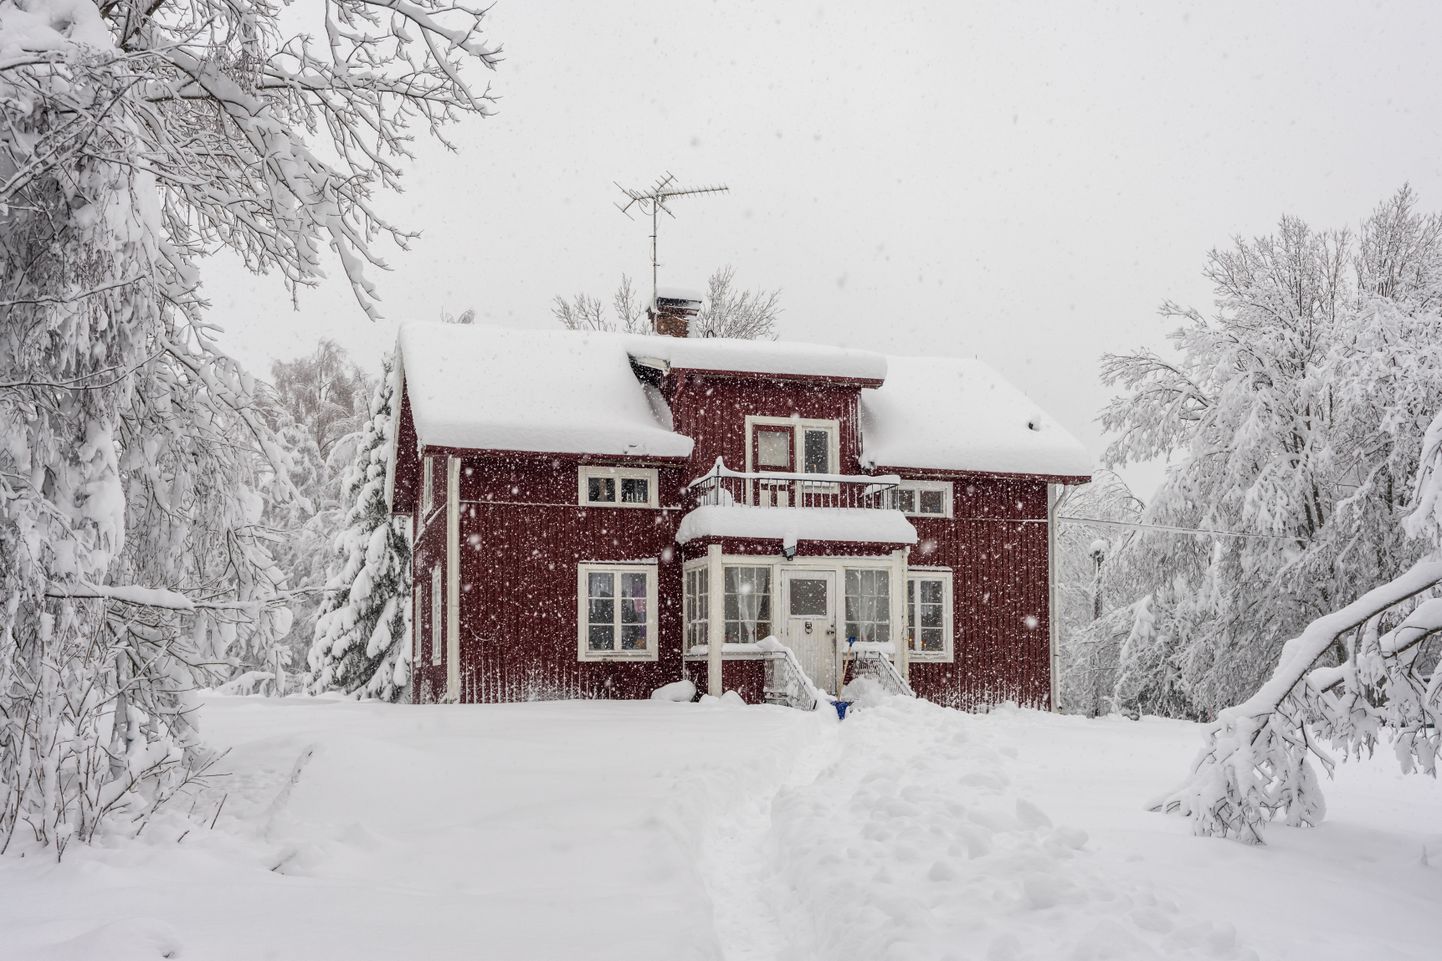 Частный дом зимой. Снимок иллюстративный.